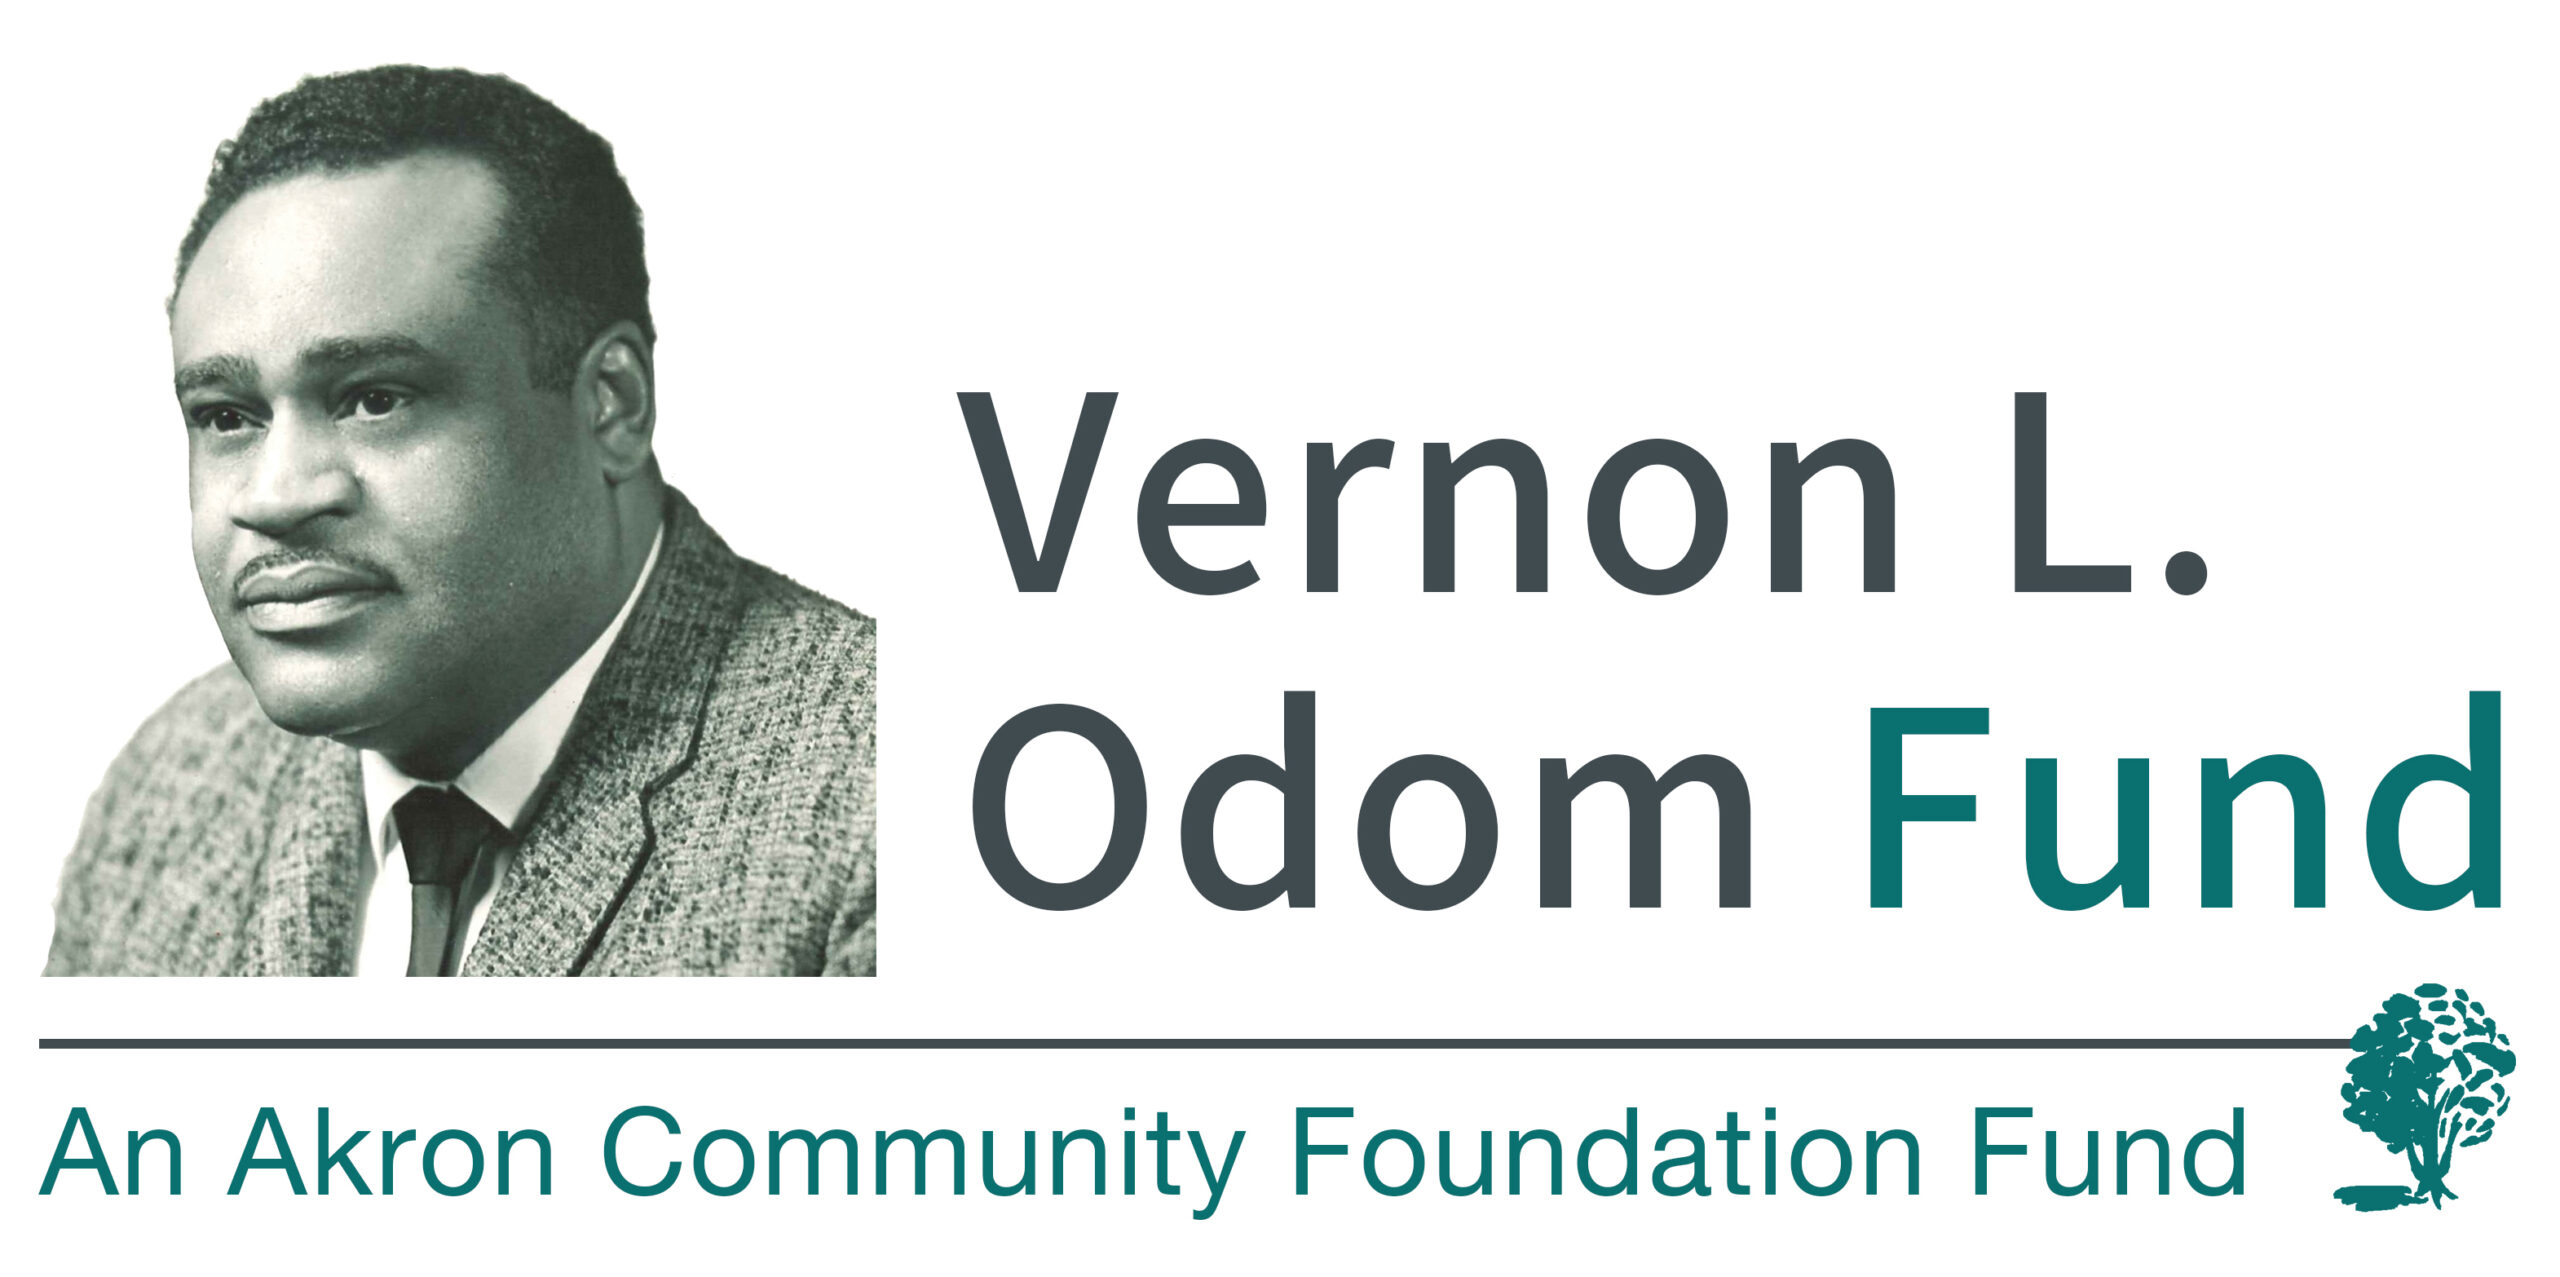 Vernon L. Odom Fund awards $10,000 in grants